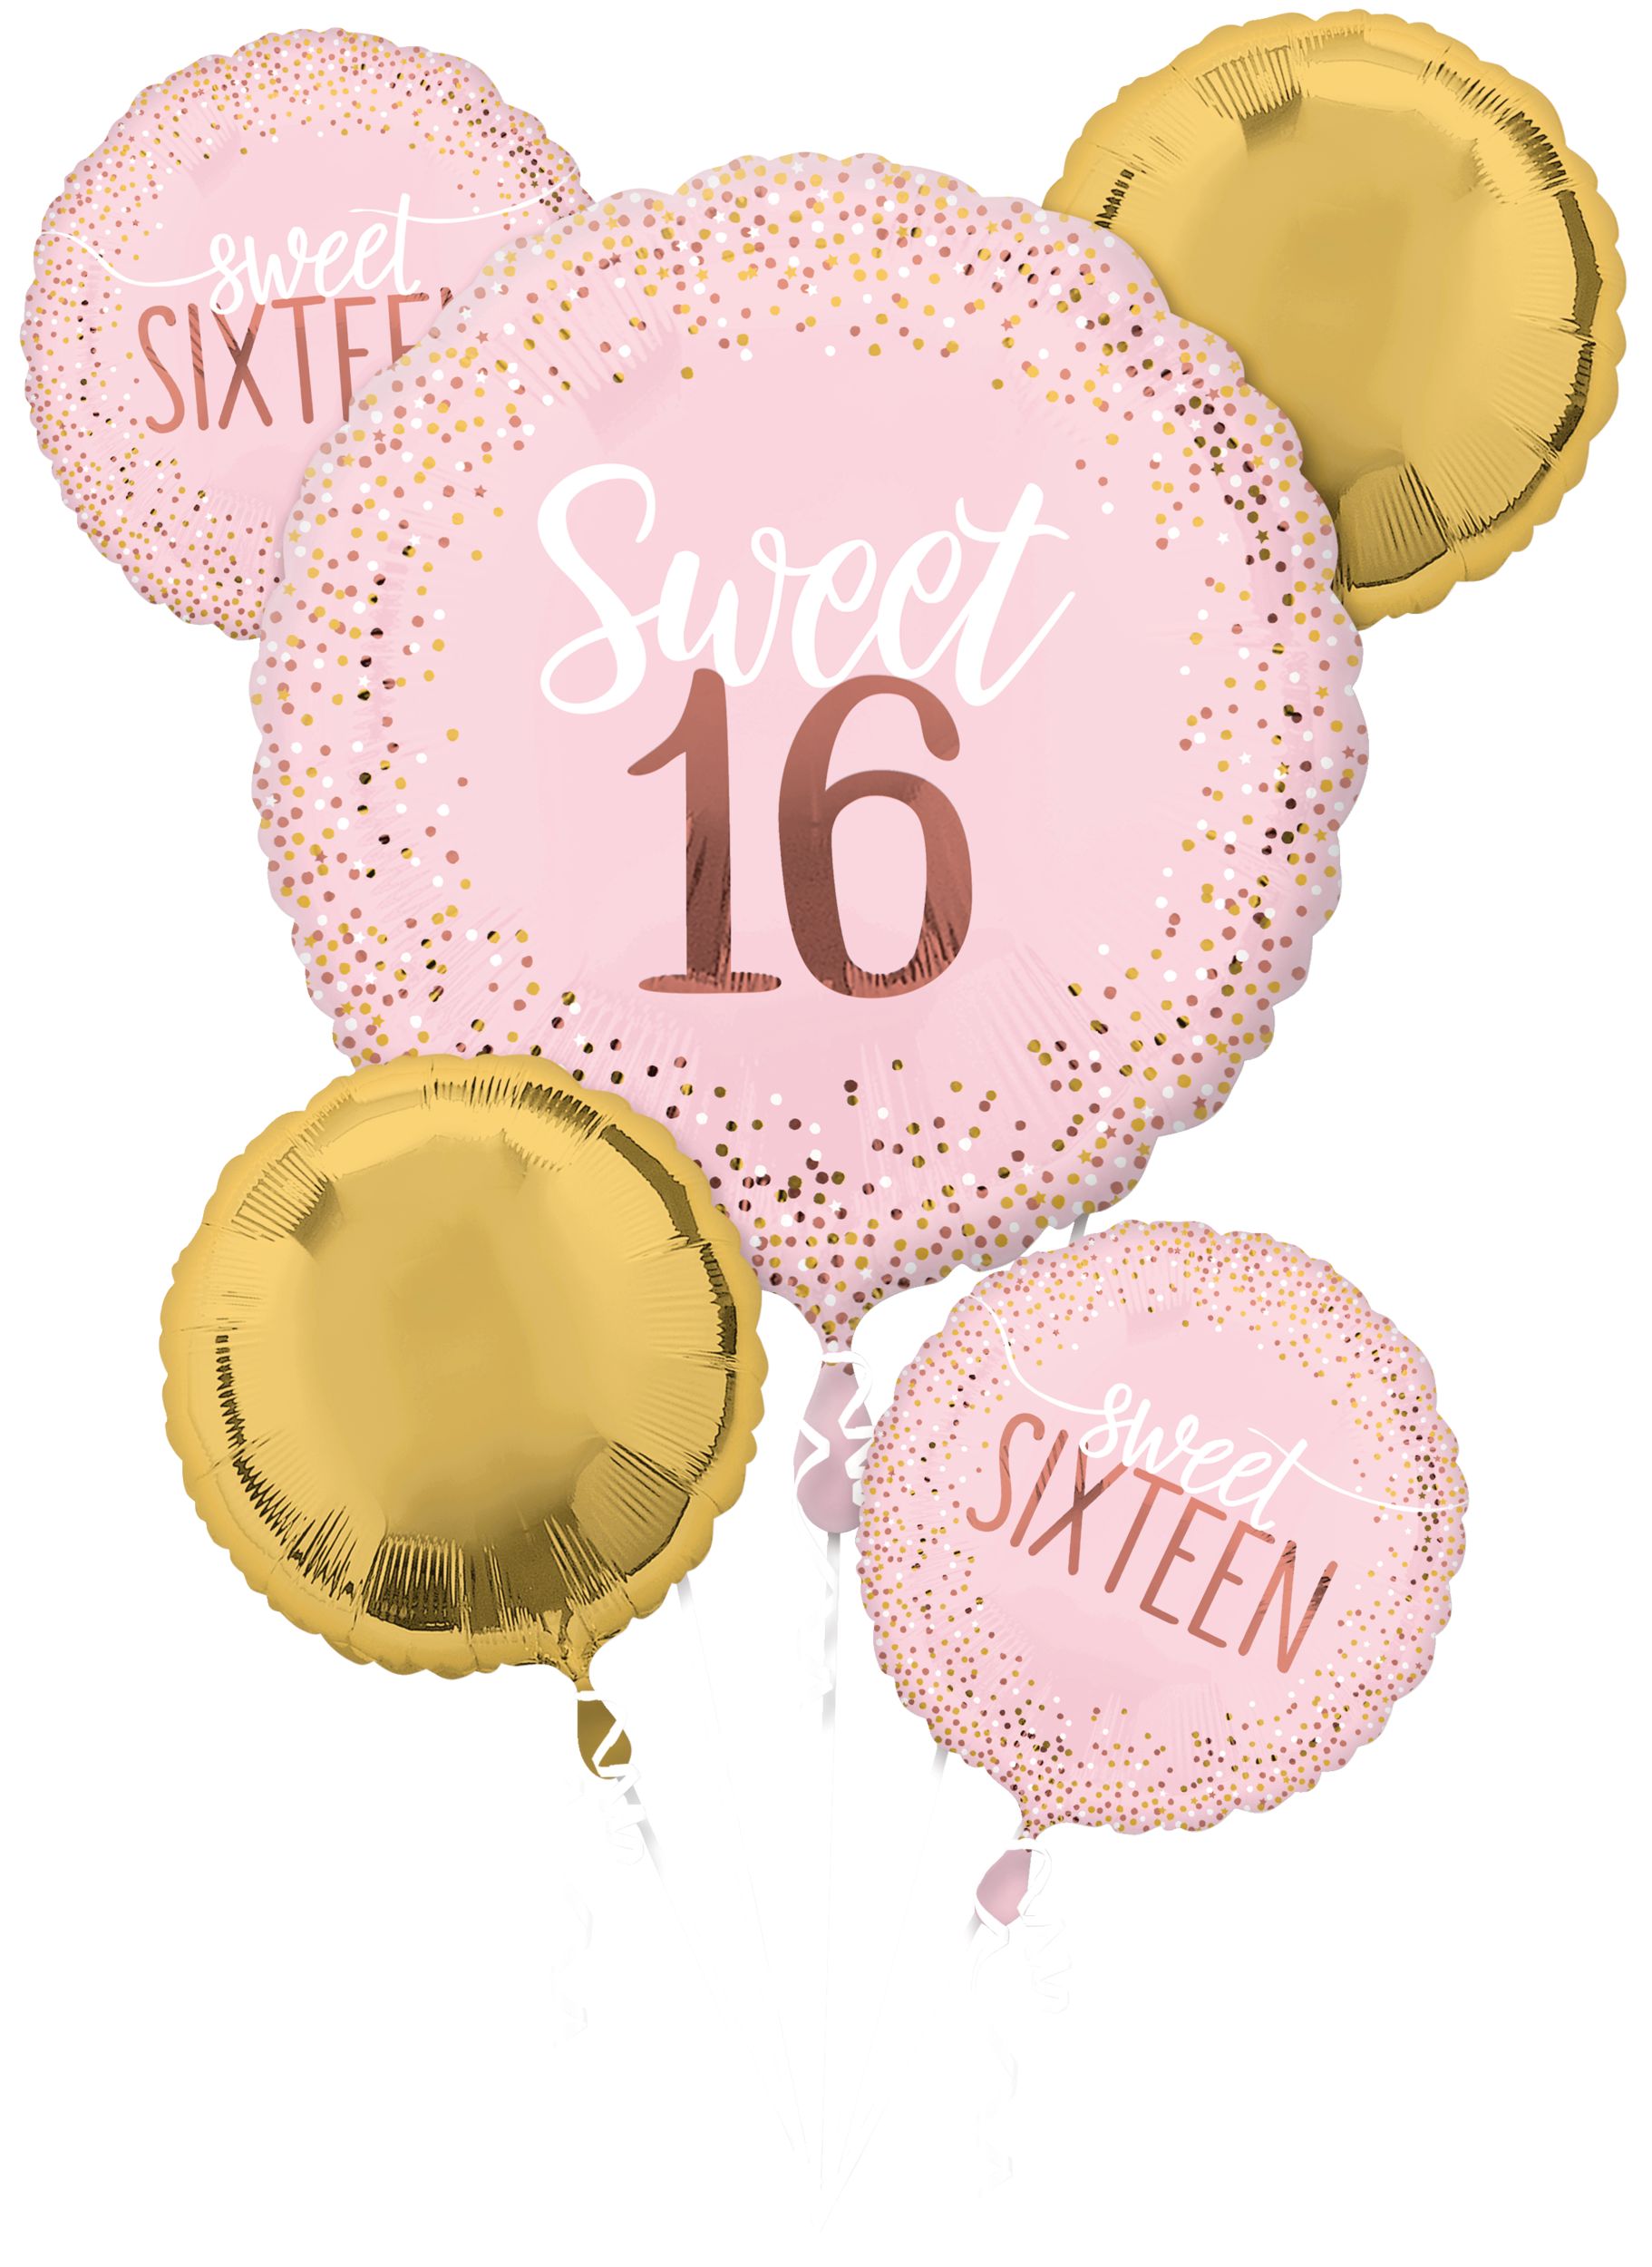 Ballon hélium rose blush anniversaire 30 ans